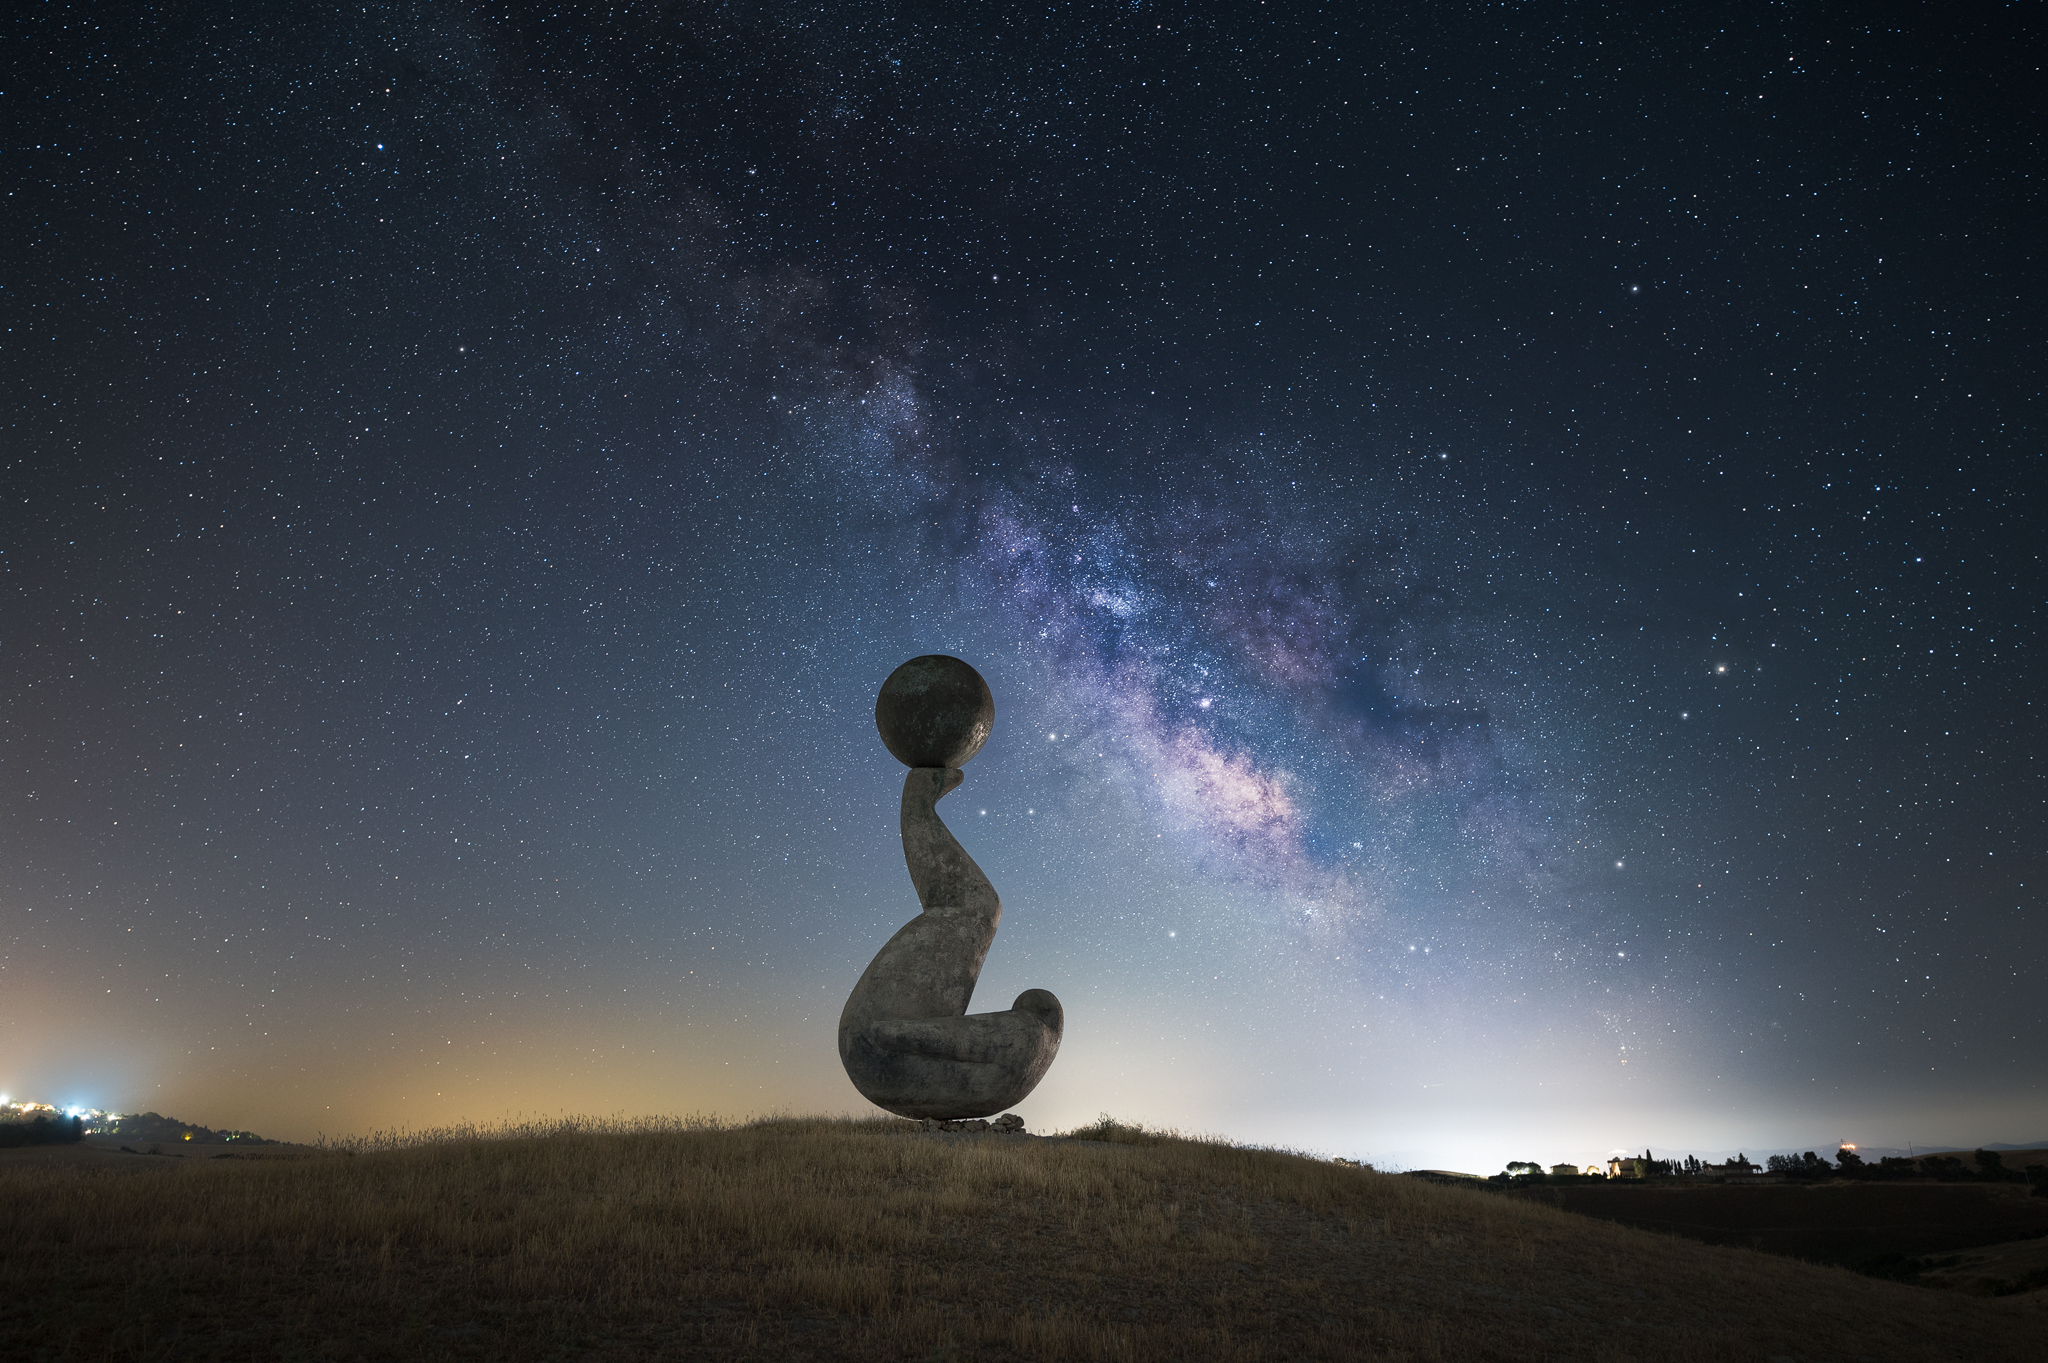 Strange sculptures under the stars...